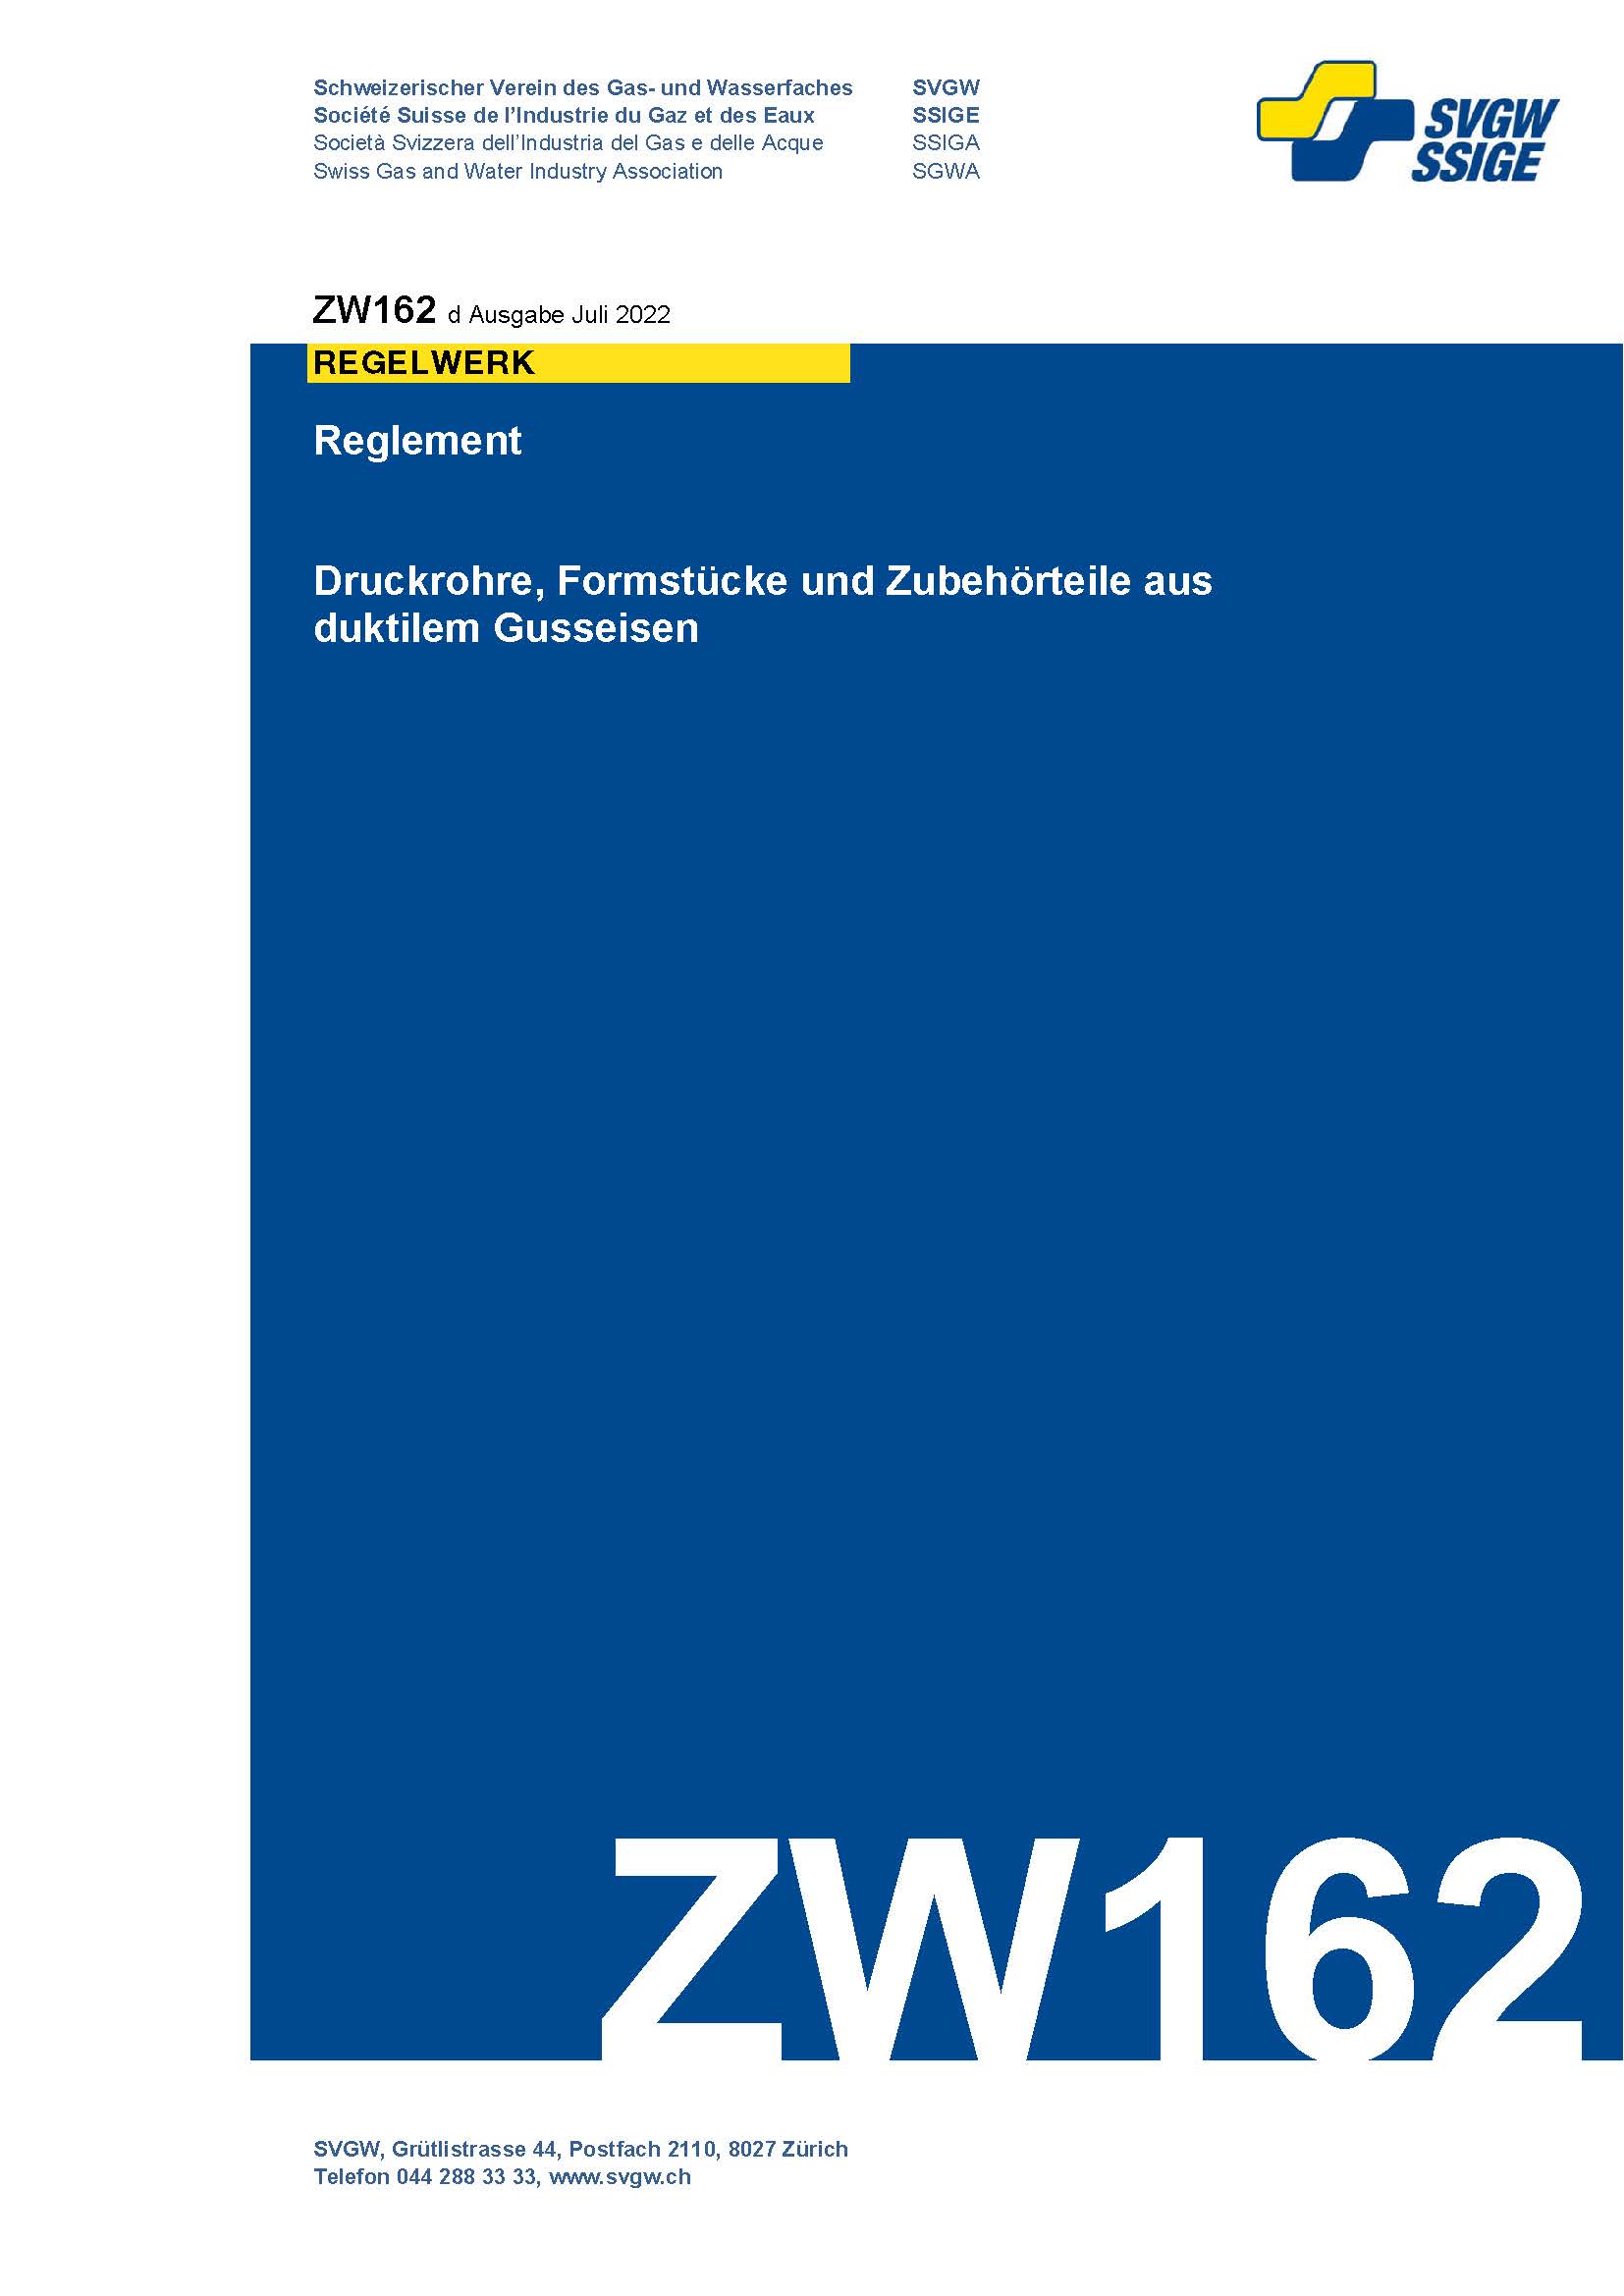 ZW162 d - Reglement; Druckrohre, Formstücke und Zubehörteile aus duktilem Gusseisen